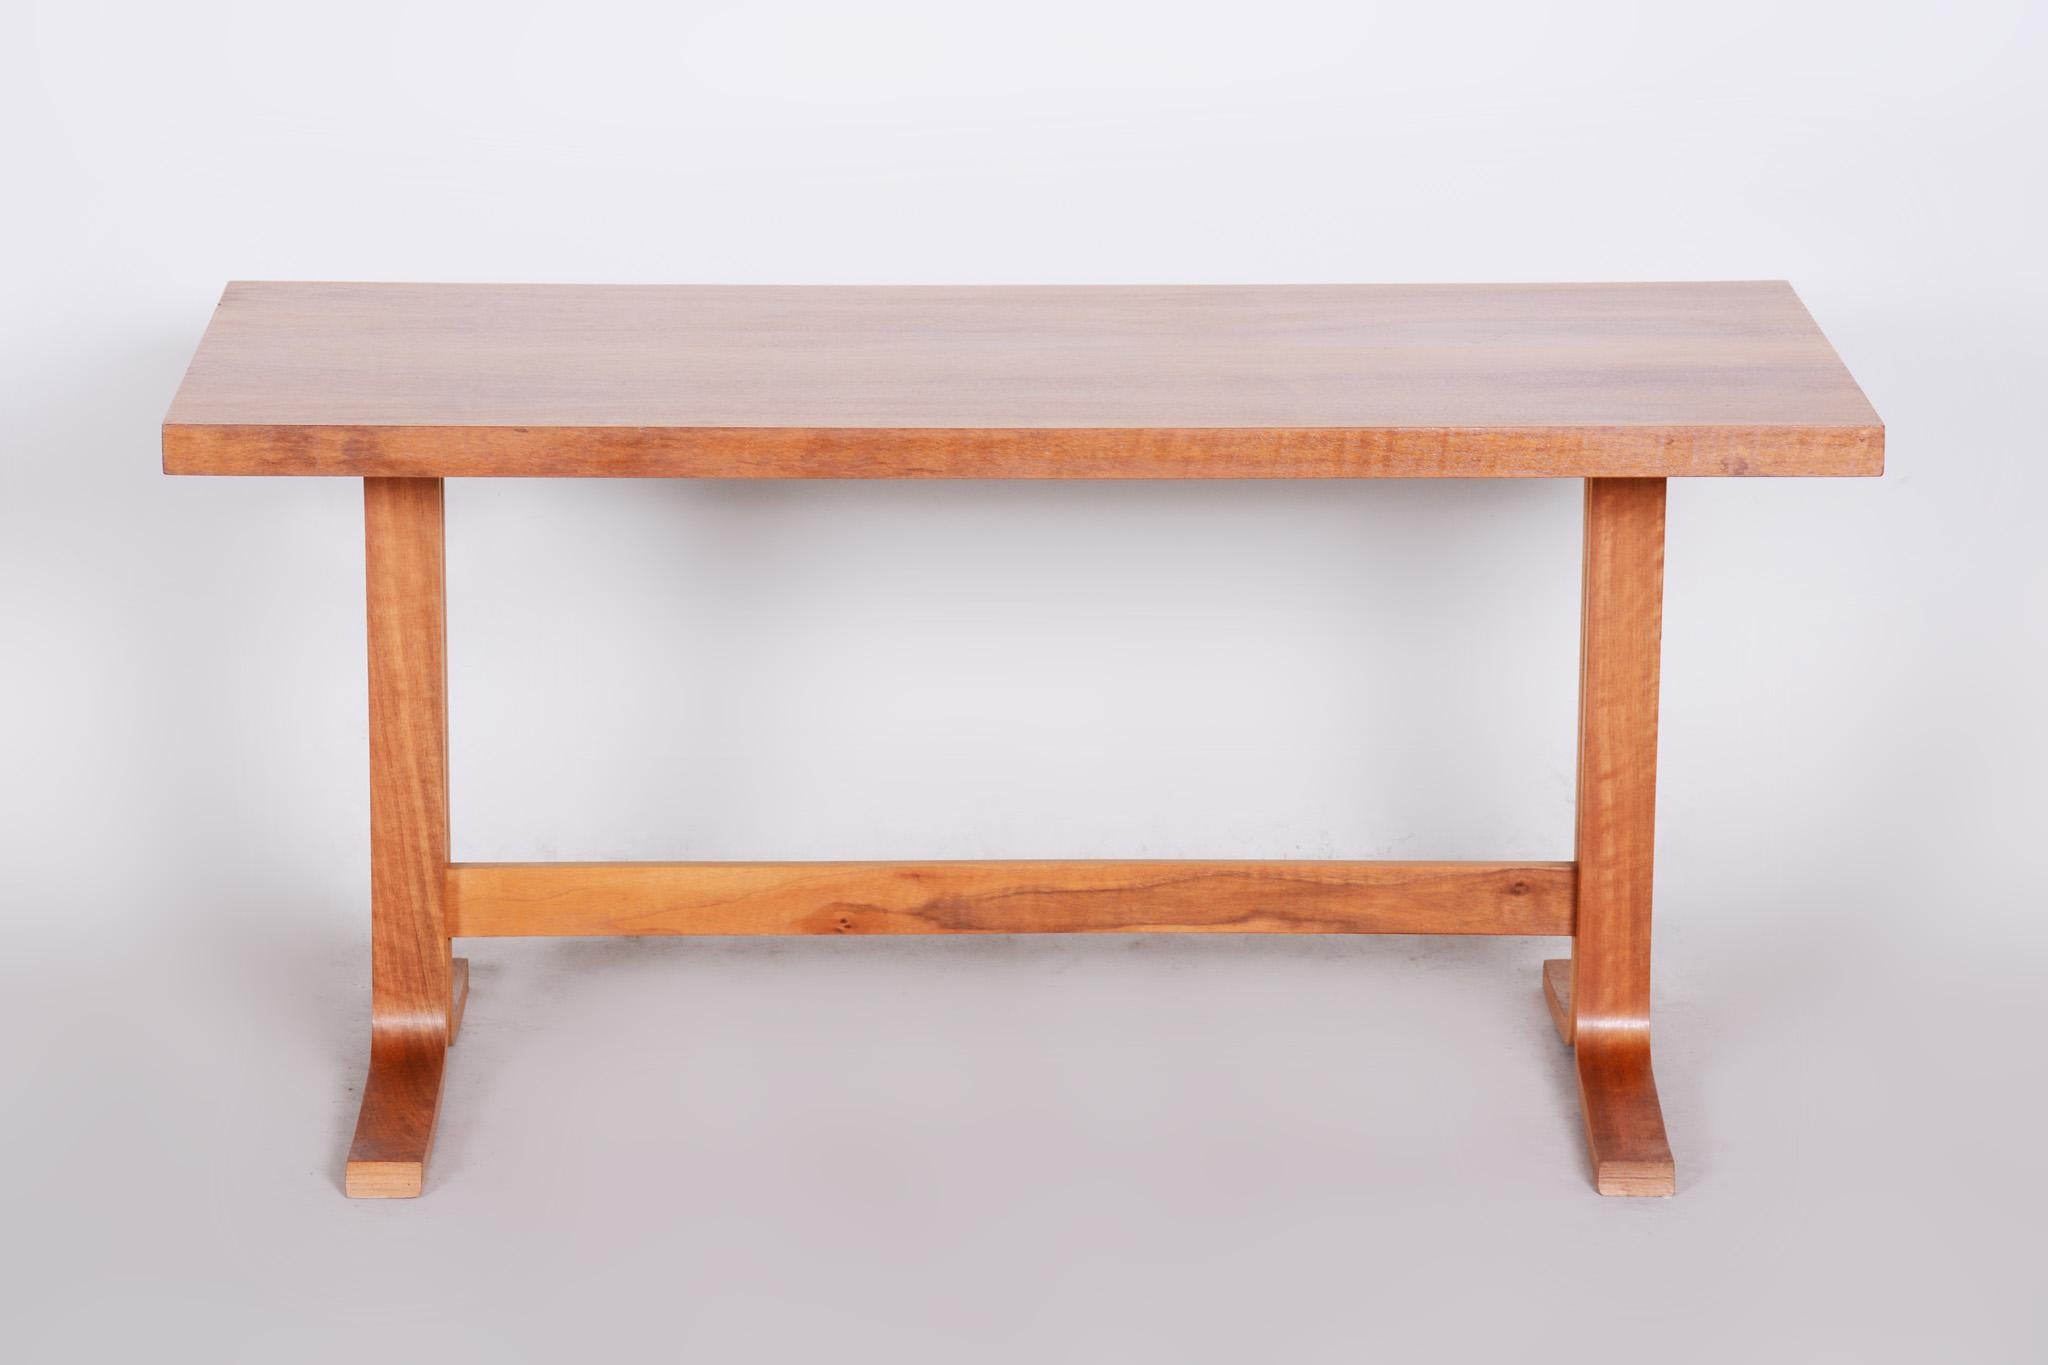 Oak table
Czech Mid-Century Modern
Material: Oak
Period: 1960-1969.